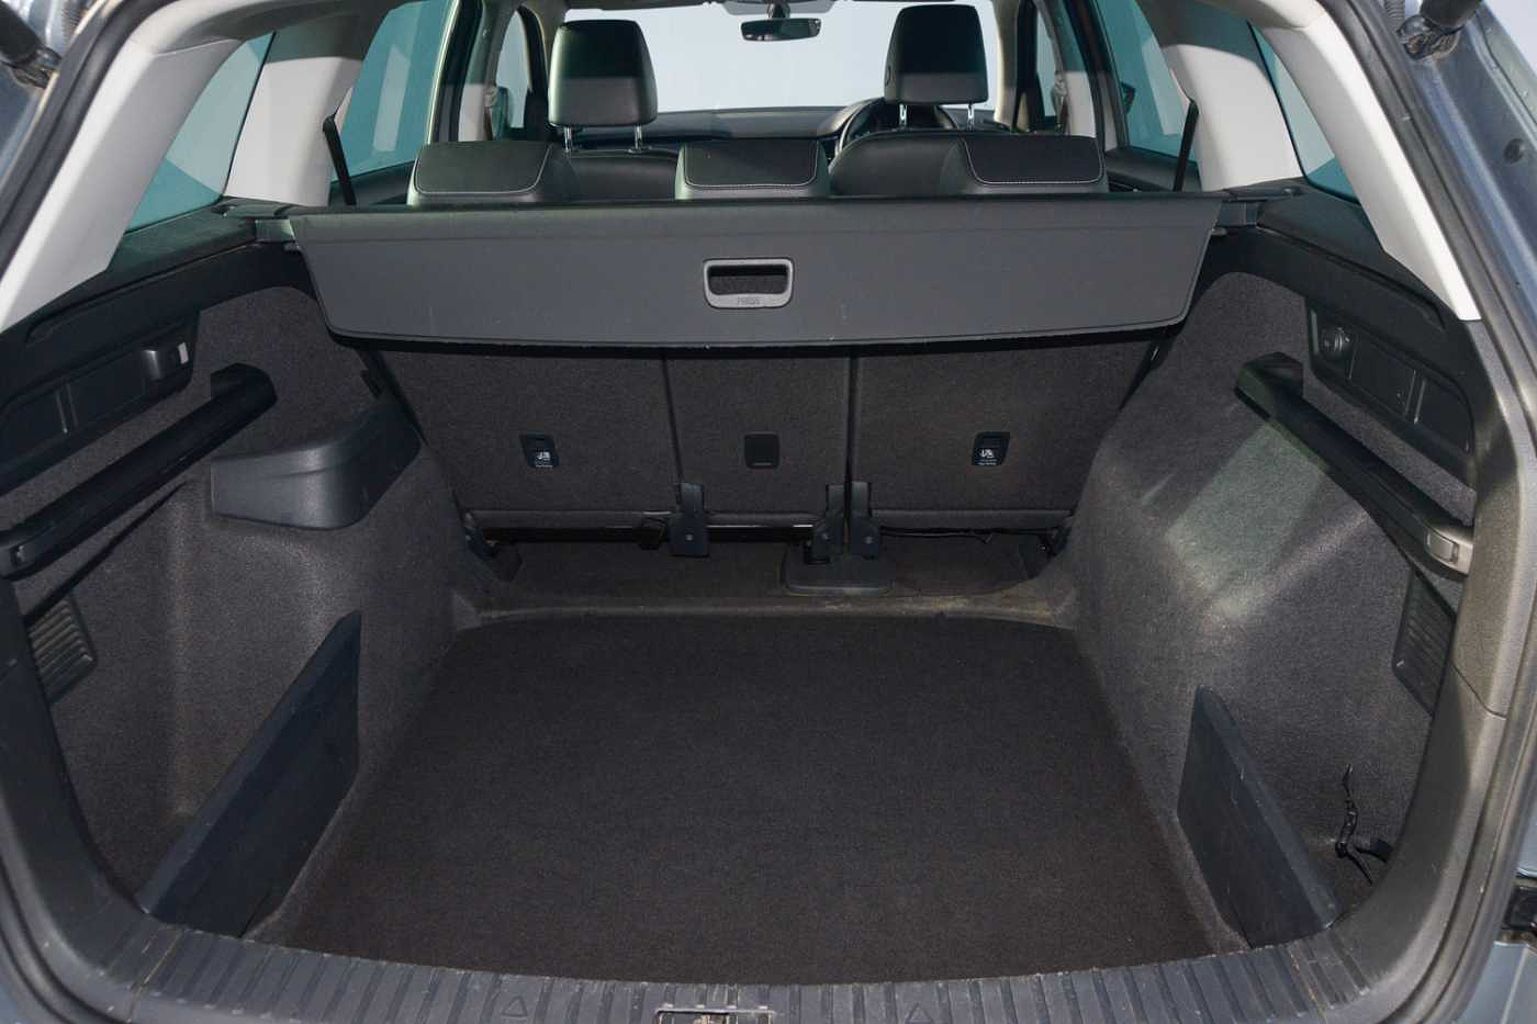 SKODA Kodiaq 1.4 TSI (150ps) SE L (5 Seats) DSG SUV